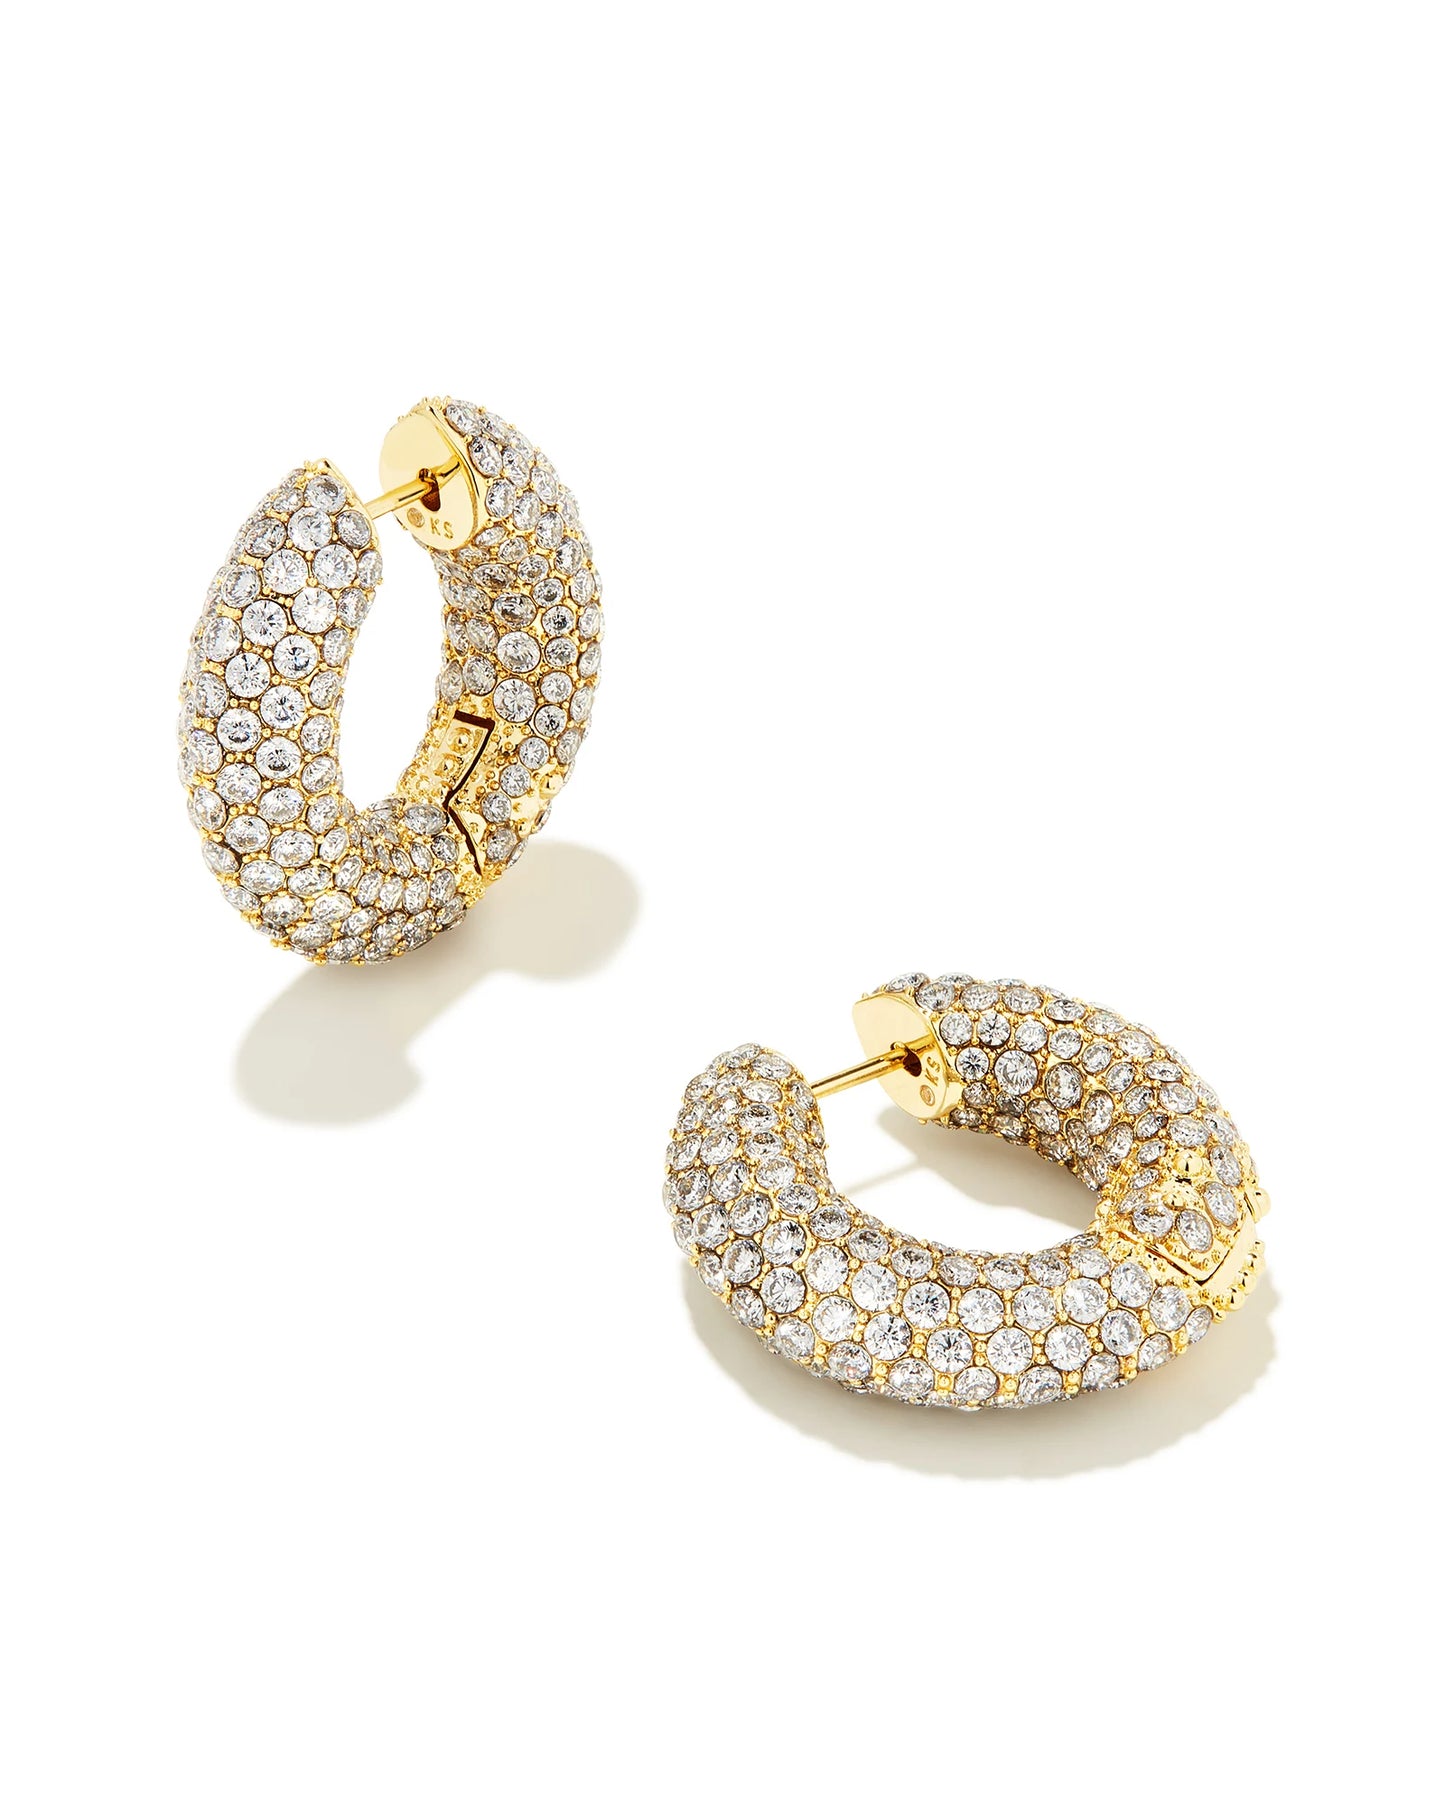 Kendra Scott Mikki Pave Hoop Earrings Gold White CZ-Earrings-Kendra Scott-E00265GLD-The Twisted Chandelier